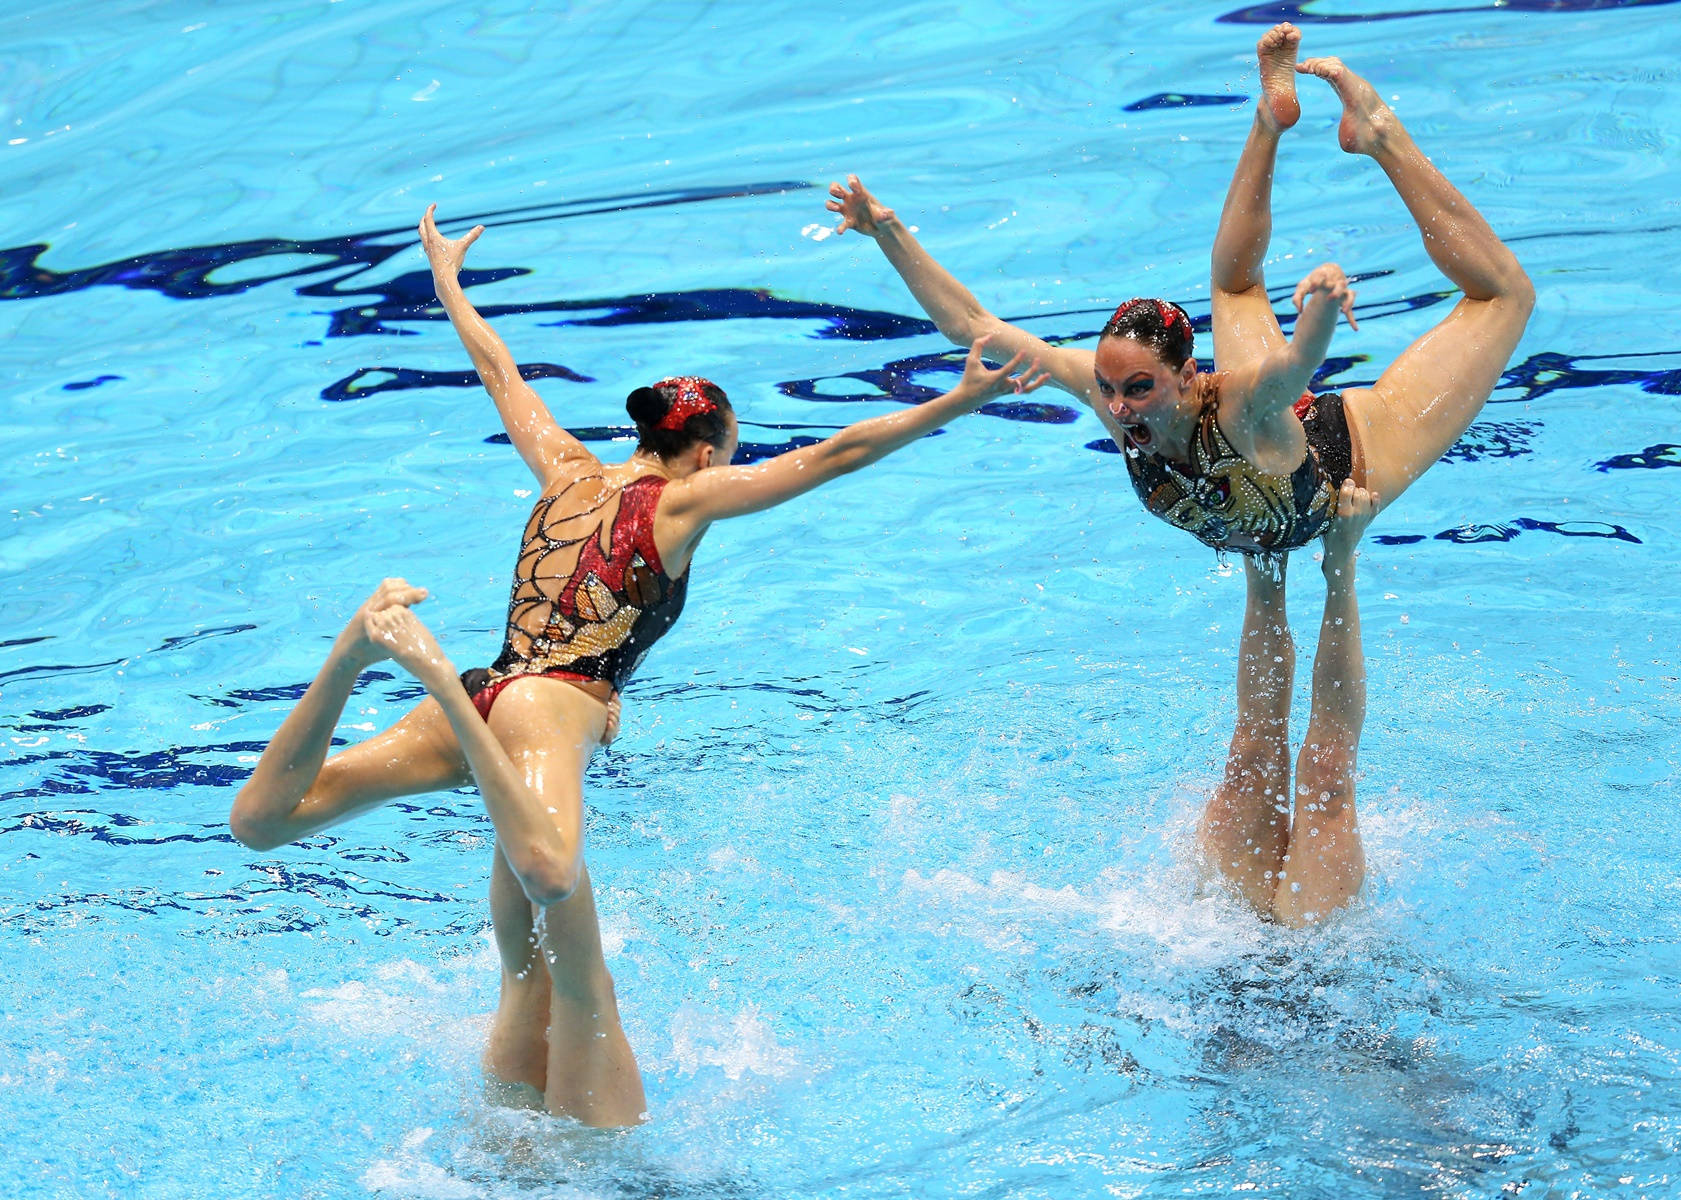 Kanadaolympische Spiele Synchrone Schwimmen 2010 Wallpaper